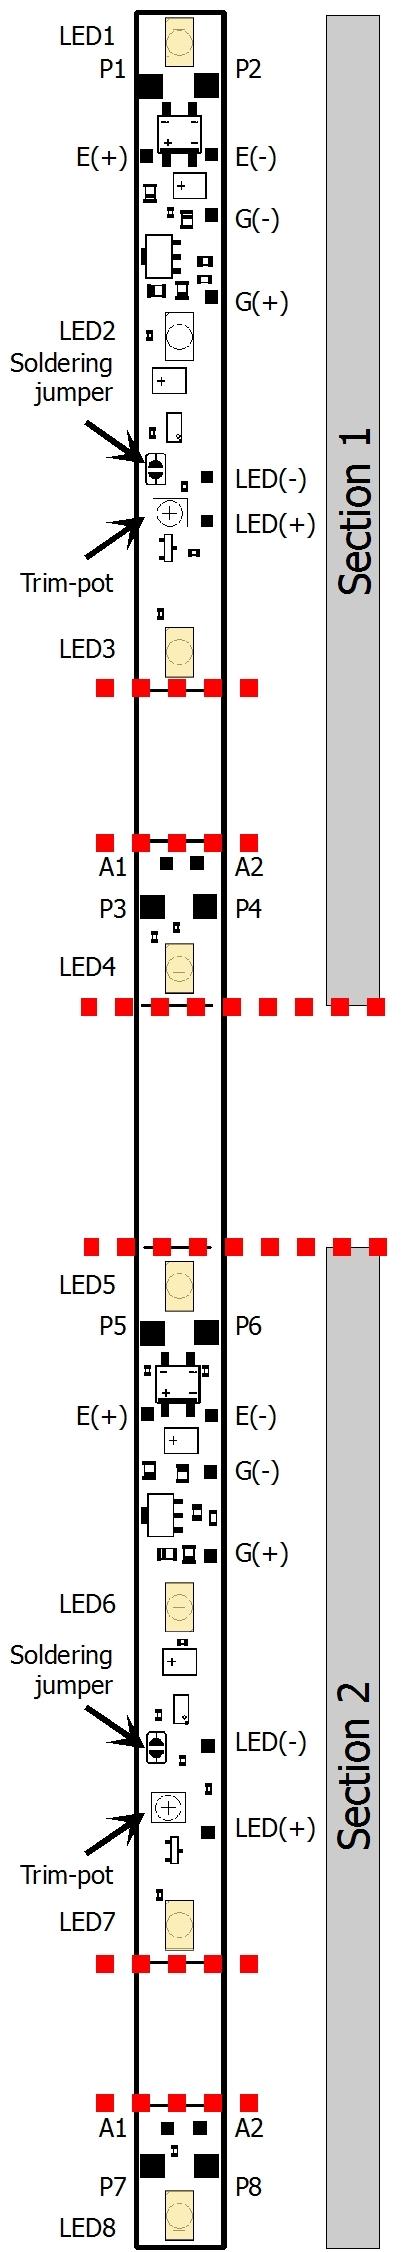 WIB-13.2 Eglish 6. Moutig the carriage lightig 6.1. Overall view P1 P8 E(+) E(-) G(+) G(-) power supply exteral bridgig capacitor goldcap or exteral bridgig capacitor A1 A2 LED(-) LED(+) power supply (remaiig segmet) additioal LEDs (e.